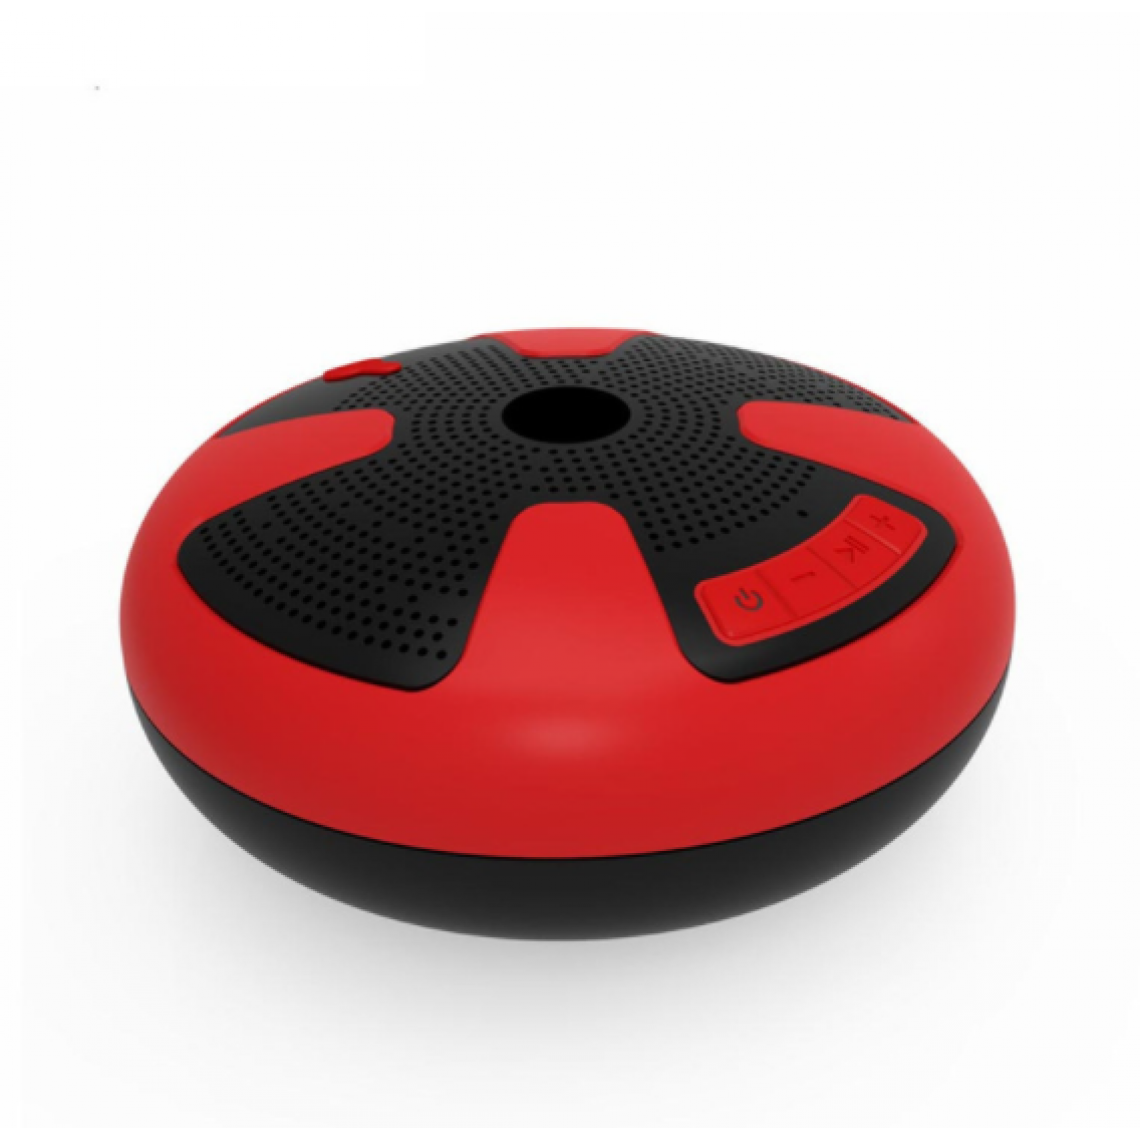 Chrono - Haut-parleur Bluetooth, haut-parleur Bluetooth flottant étanche IPX7 sans fil portable, avec fonction TWS, basses lourdes, couplage stéréo, durable, adapté à la piscine, à la plage, à la douche, aux voyages(Rouge) - Enceintes Hifi